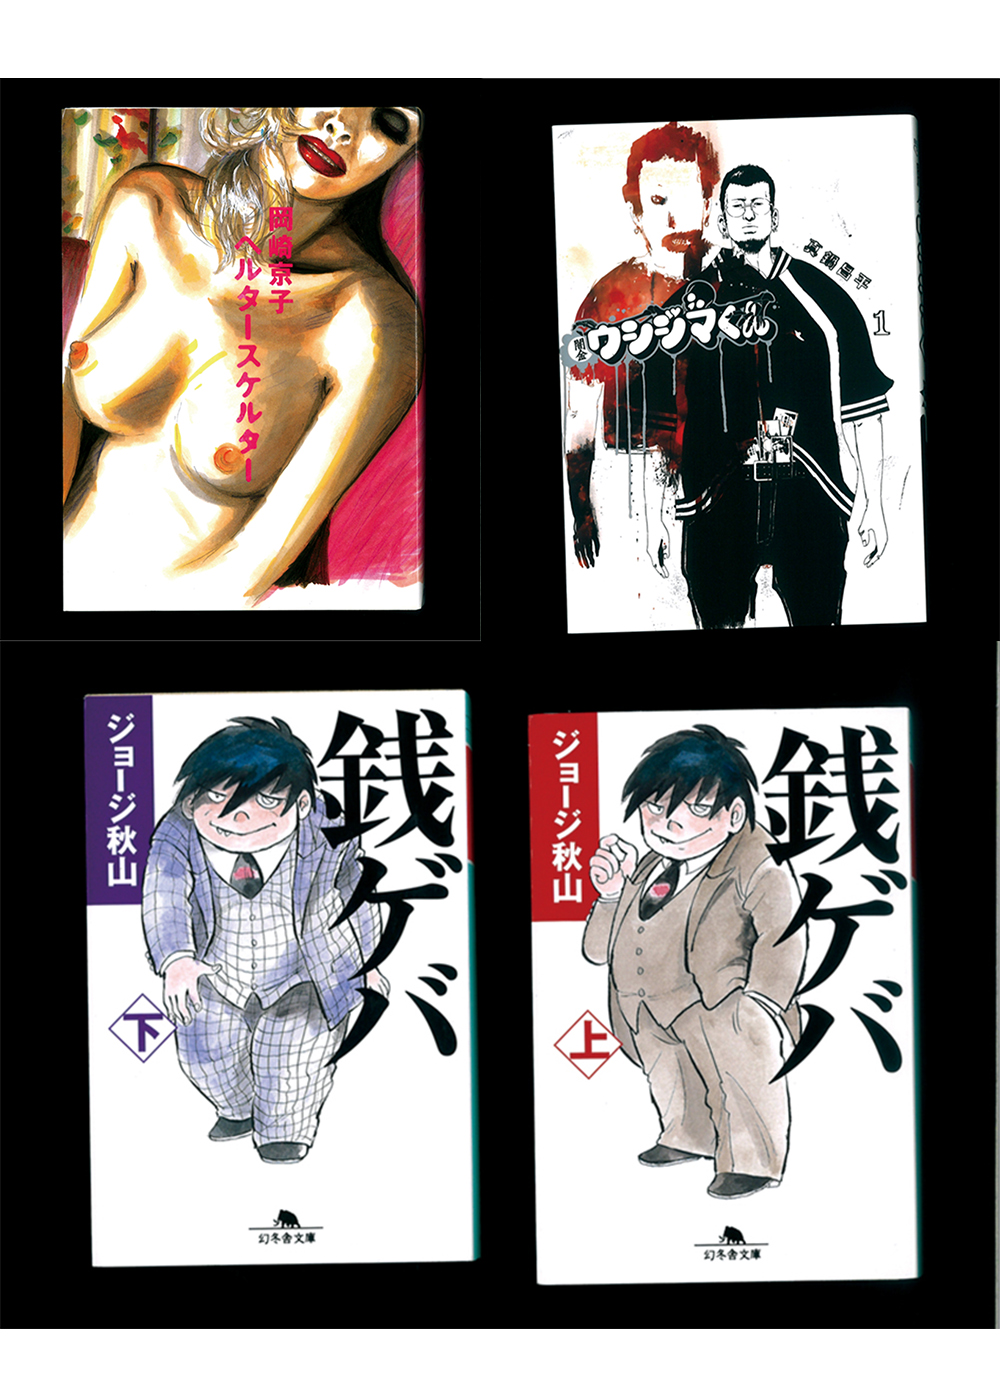 トミヤマユキコが選ぶ３冊「お金の怖さを教えてくれる漫画」